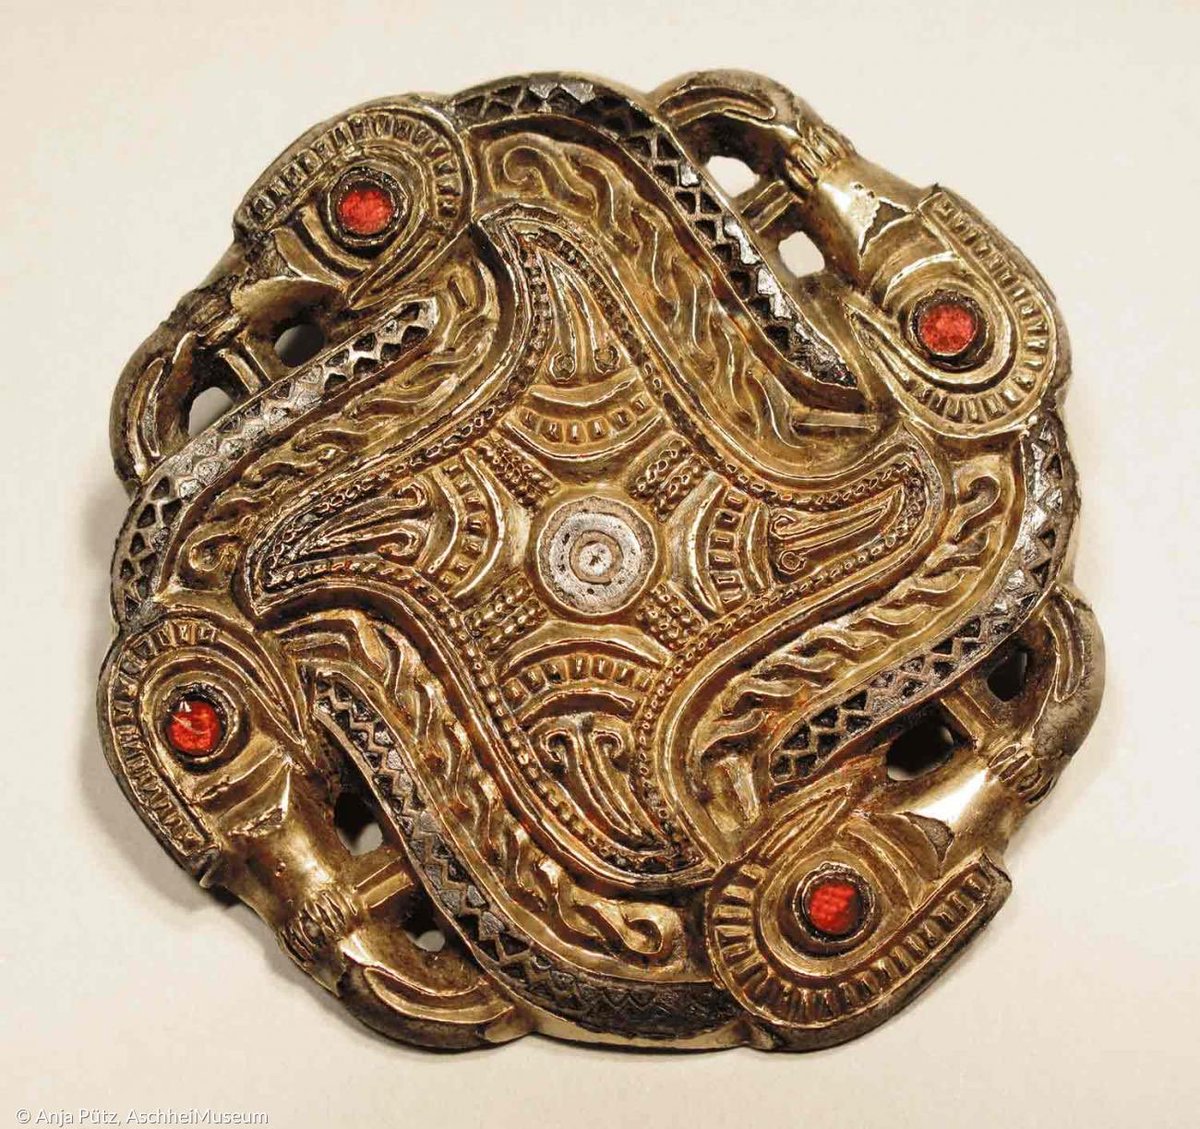 Stunning raven fylfot brooch from Aschheim, Bavaria, 6th Century.